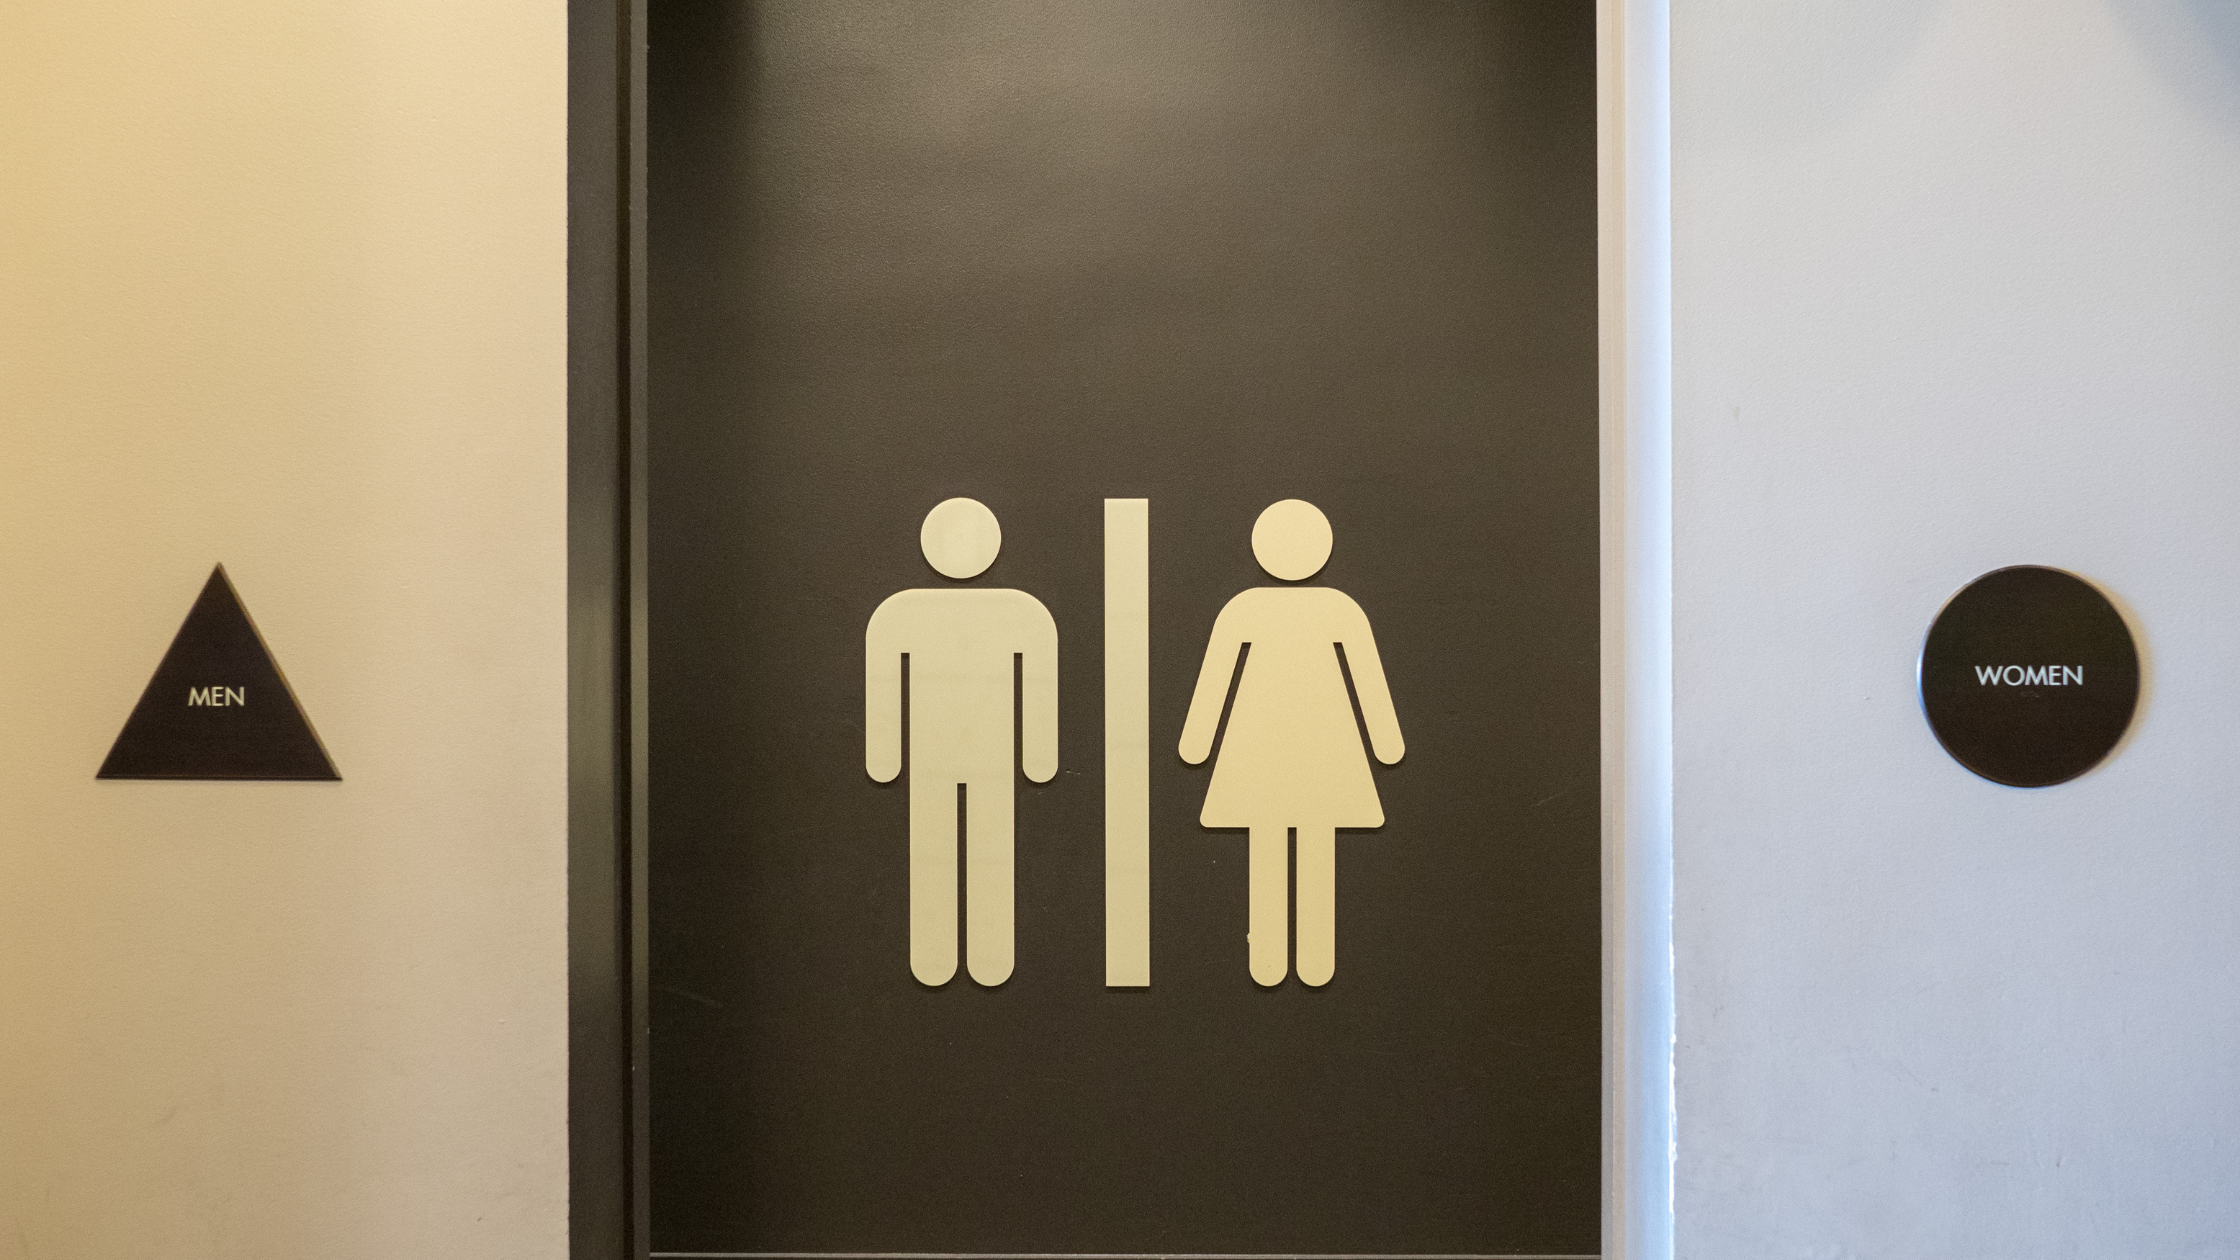 A restroom door for men/women